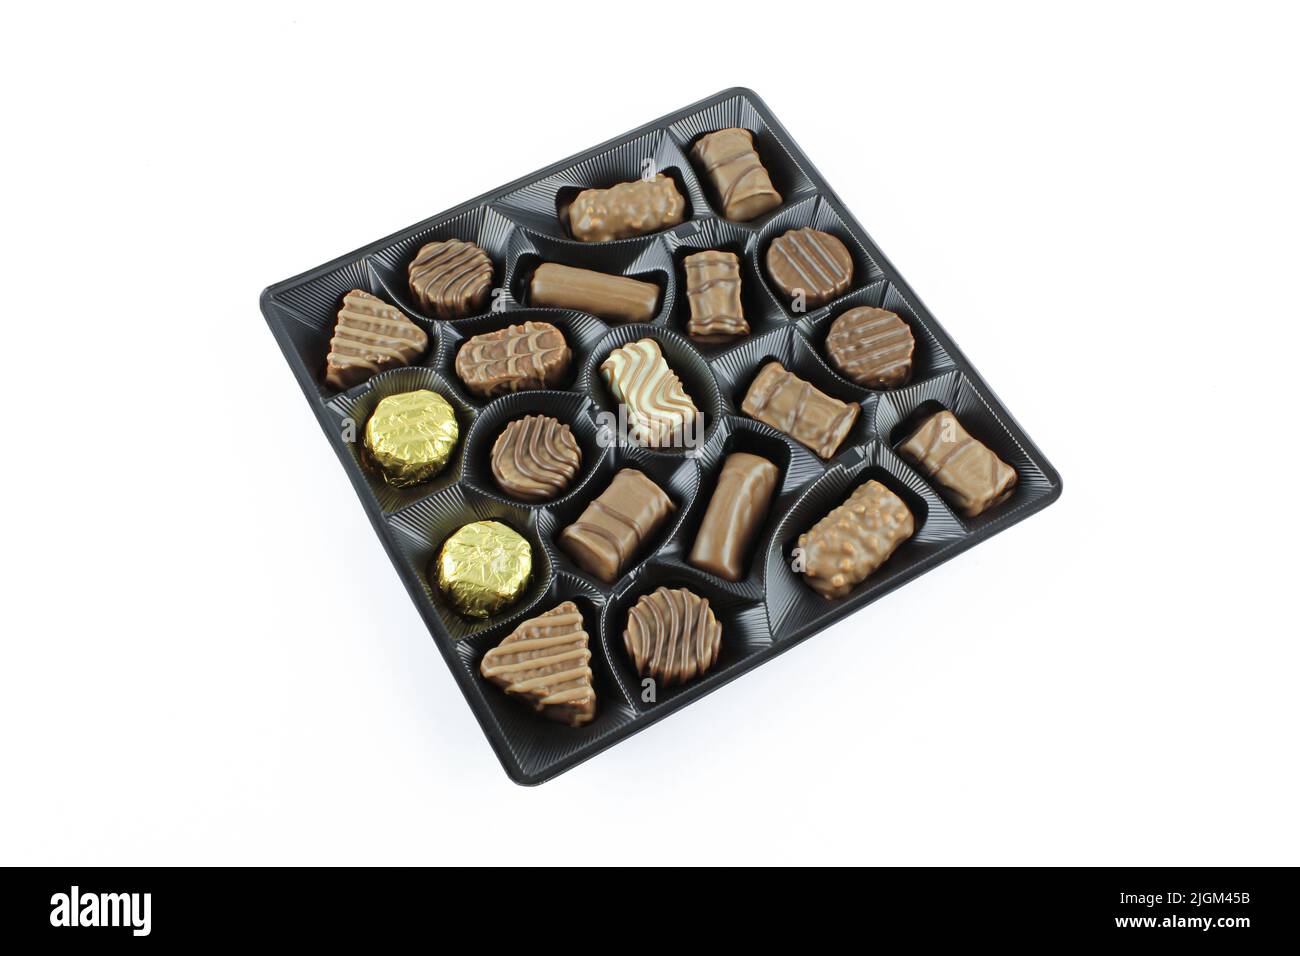 Variété de pralines au chocolat doux dans un emballage en plastique isolé sur fond blanc Banque D'Images